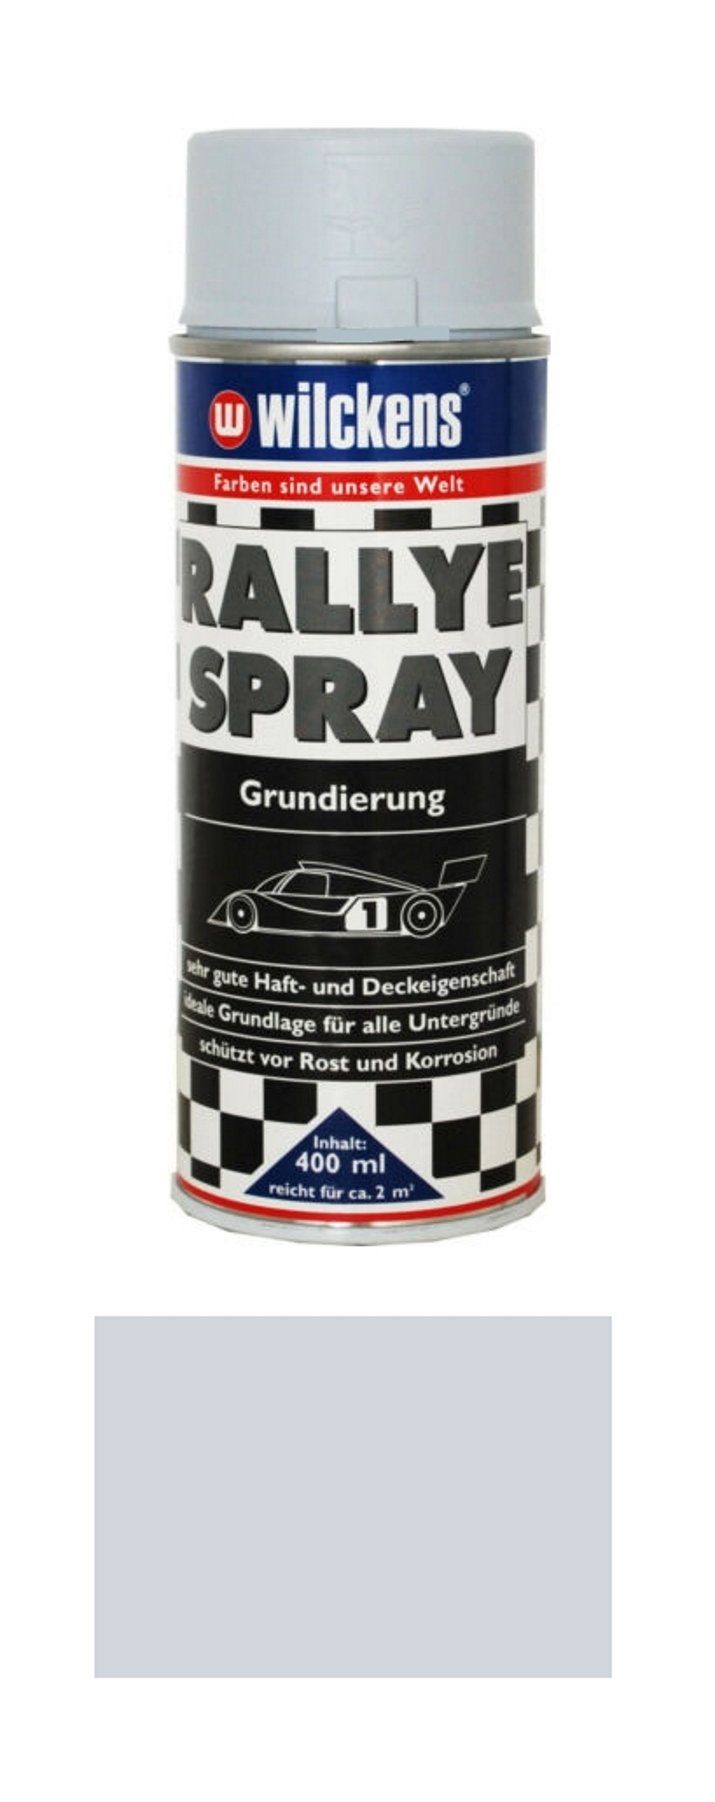 Wilckens Farben Sprühlack 400 ml Rallye Spray Grundierung Grau